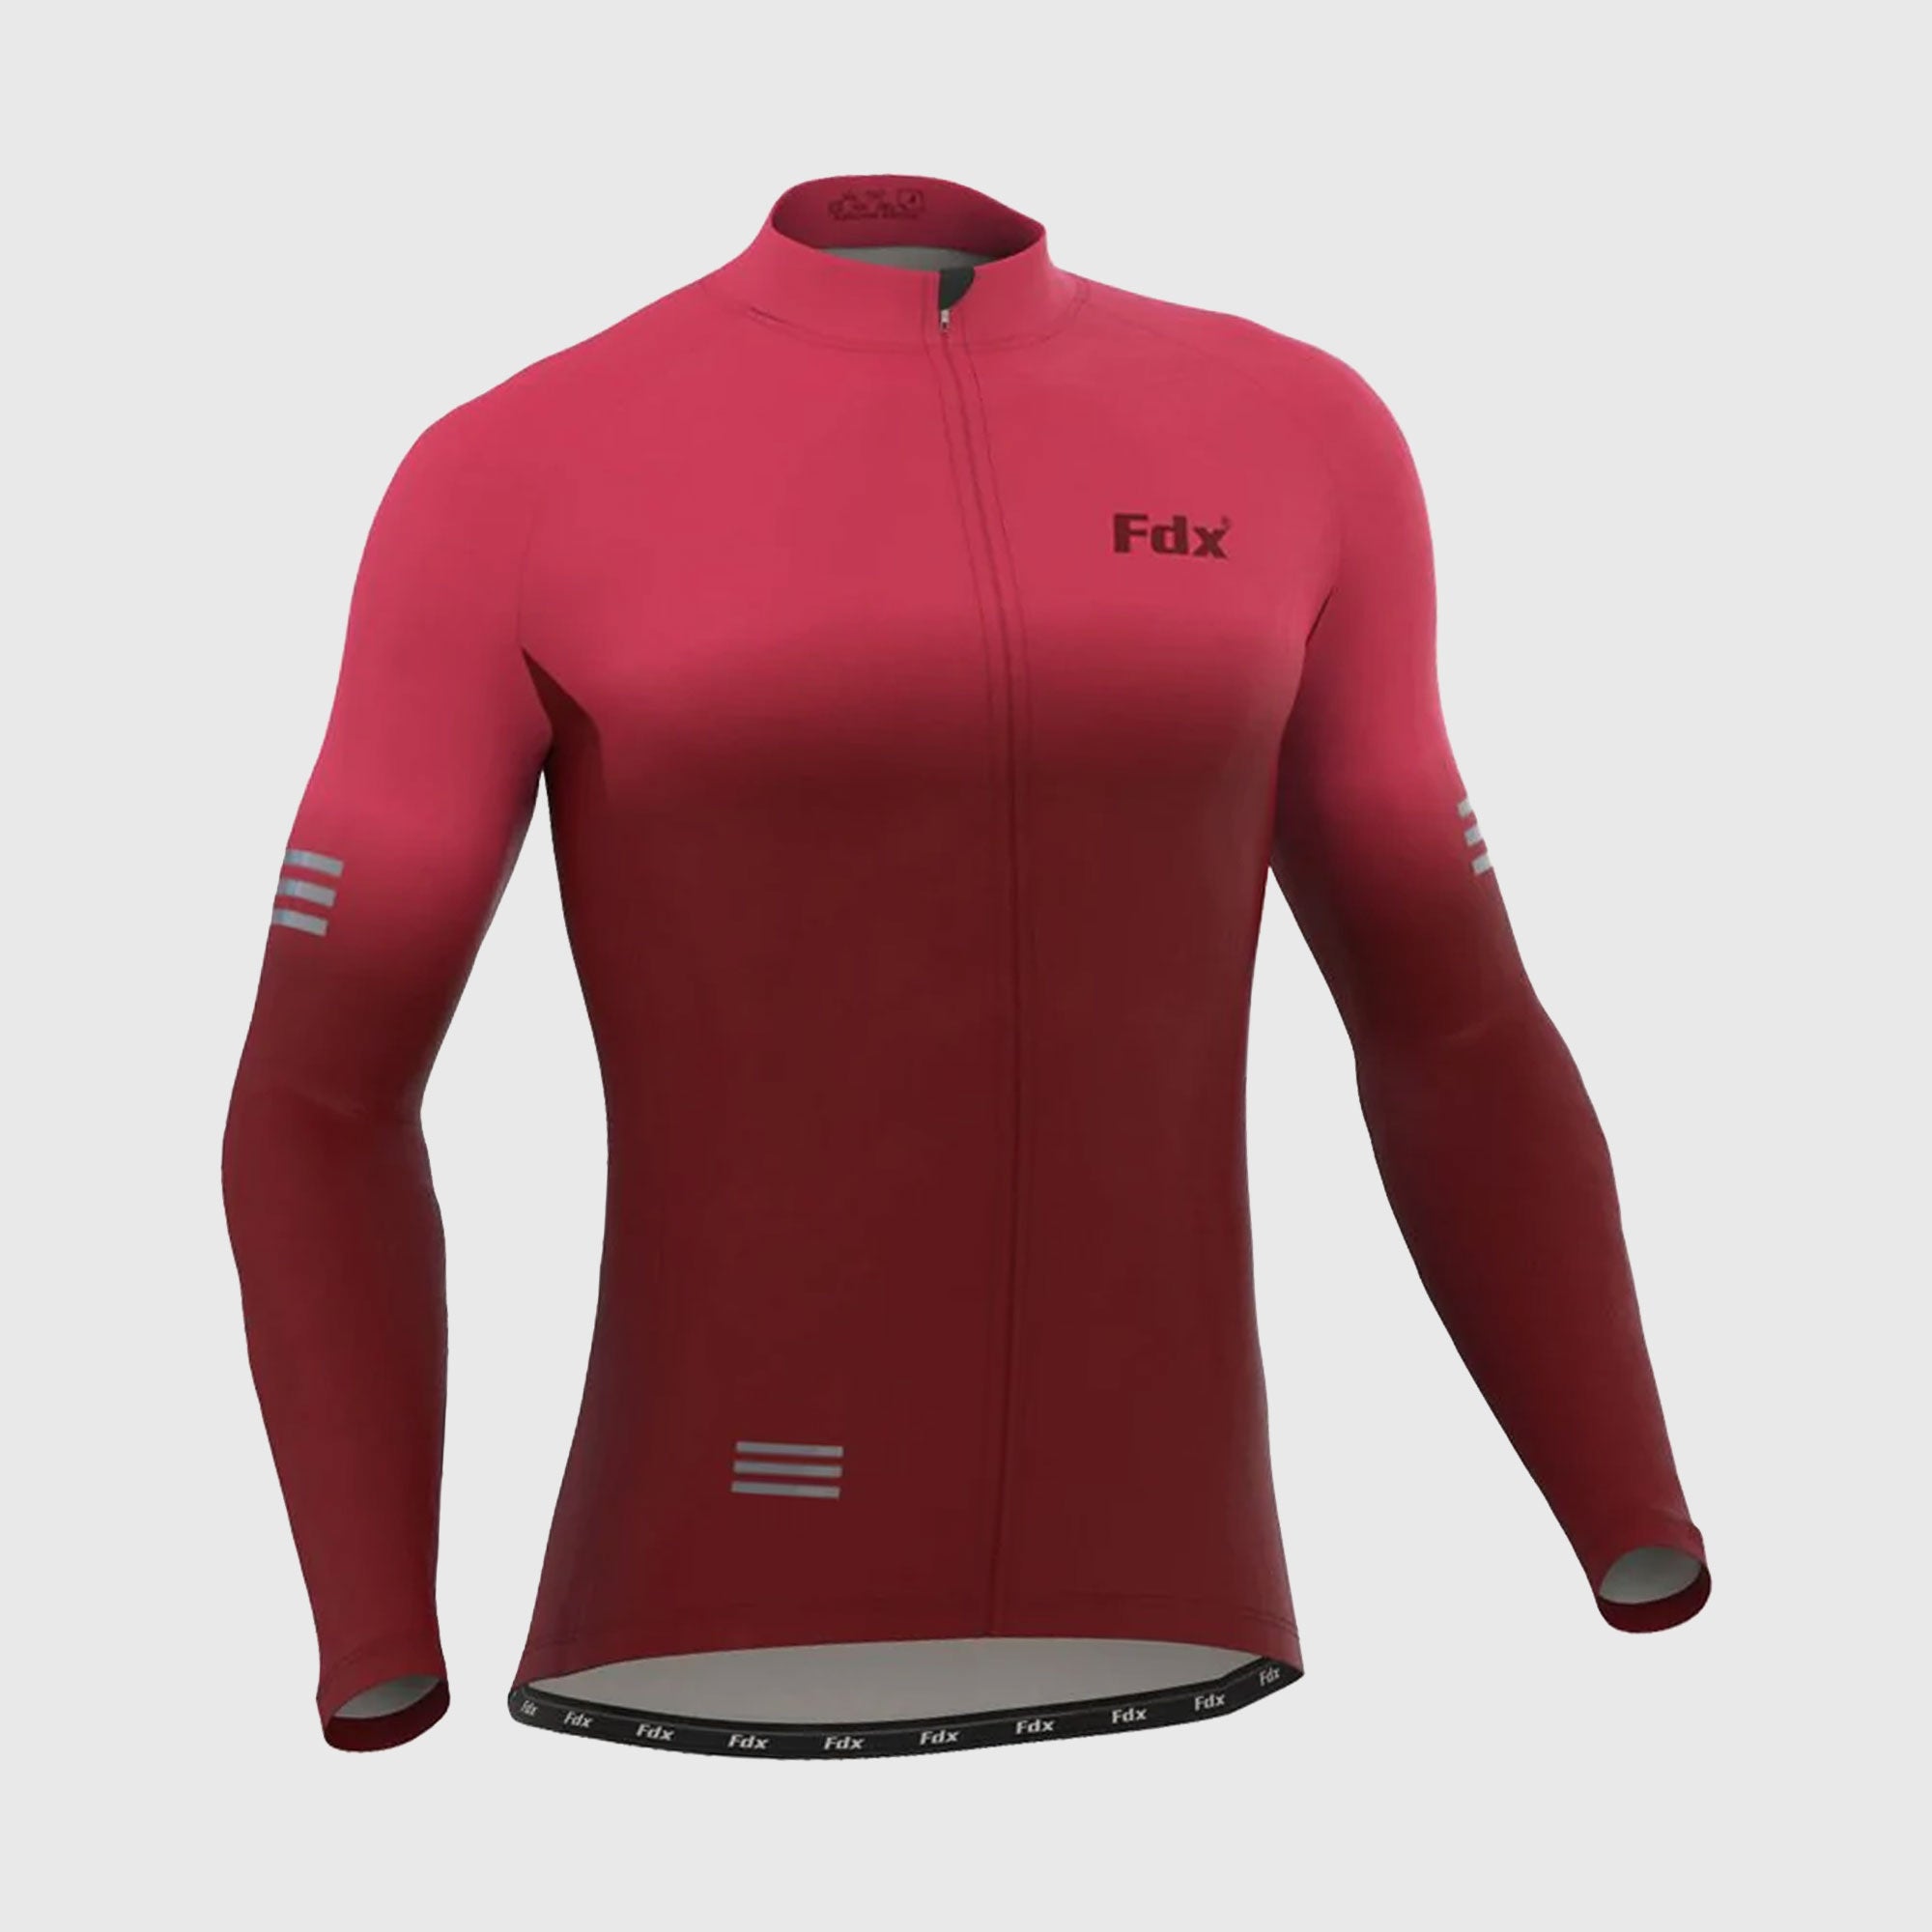 Fdx Men's Pink & Maroon Best Long Sleeve Cycling Jersey for Winter Roubaix Thermal Fleece Road Bike Wear Top Full Zipper, Pockets & Hi viz Reflectors - Duo